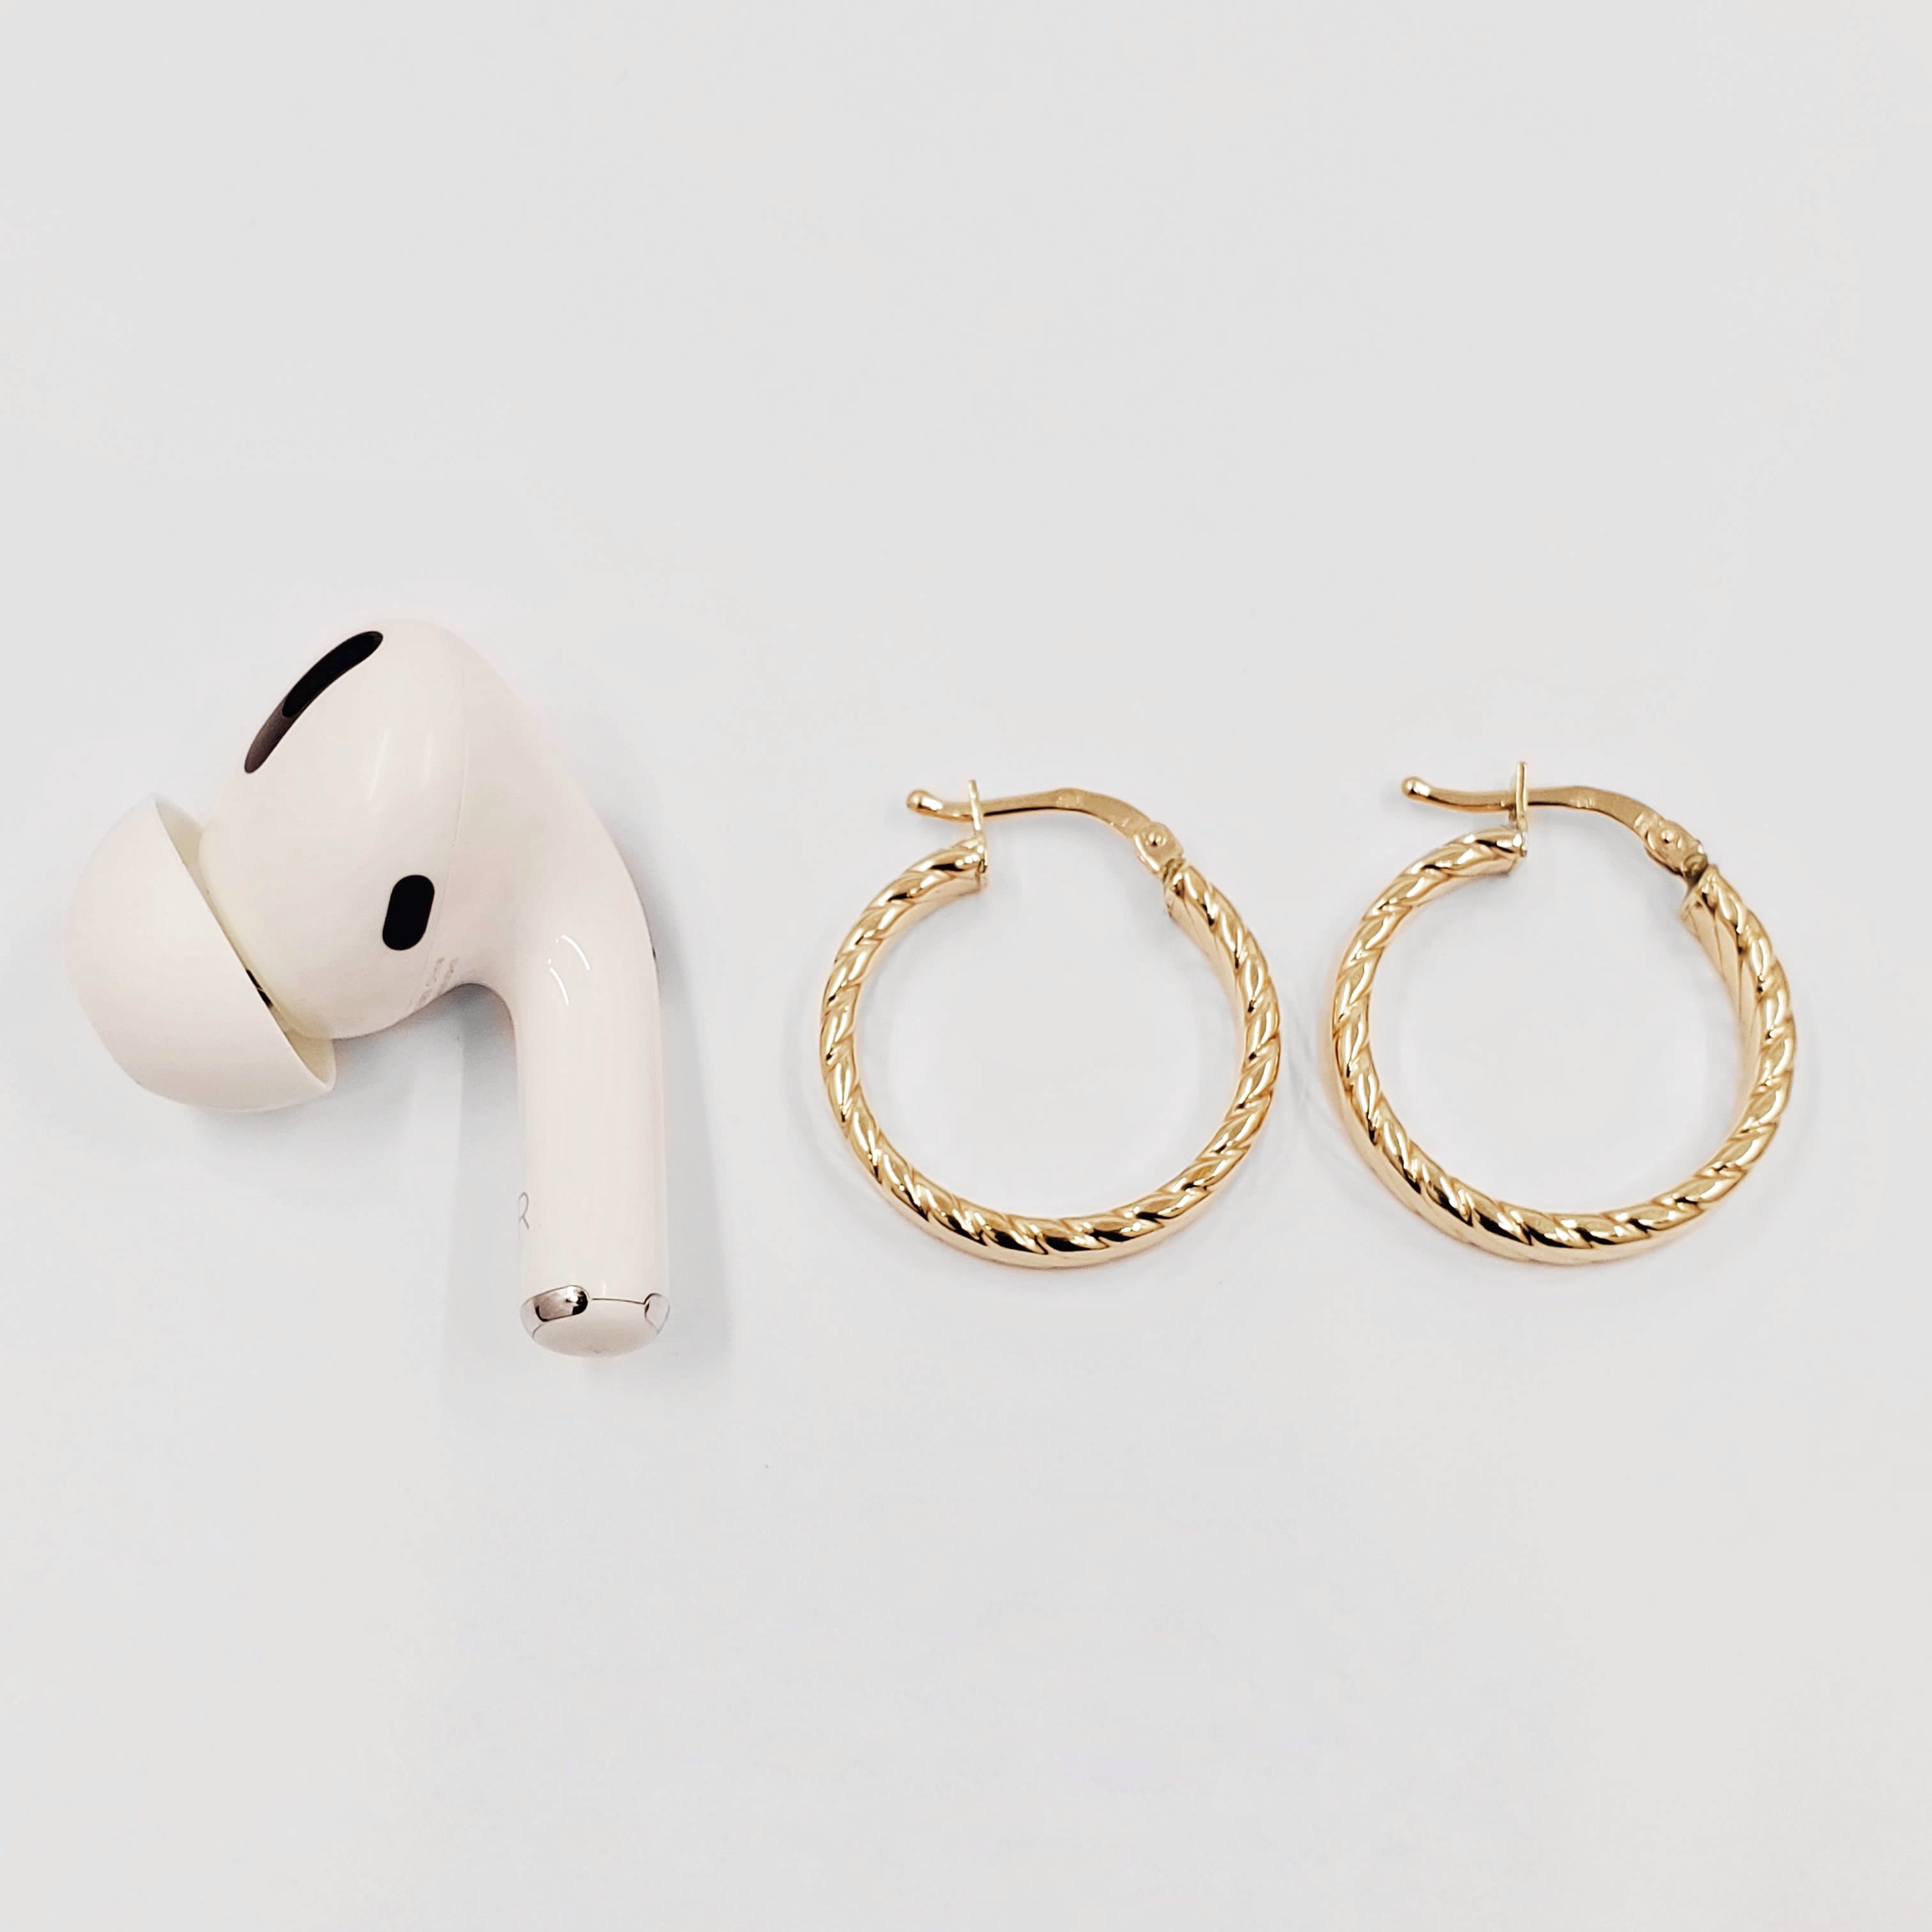 Braided Hoop Earrings - ChaiCoJewelry